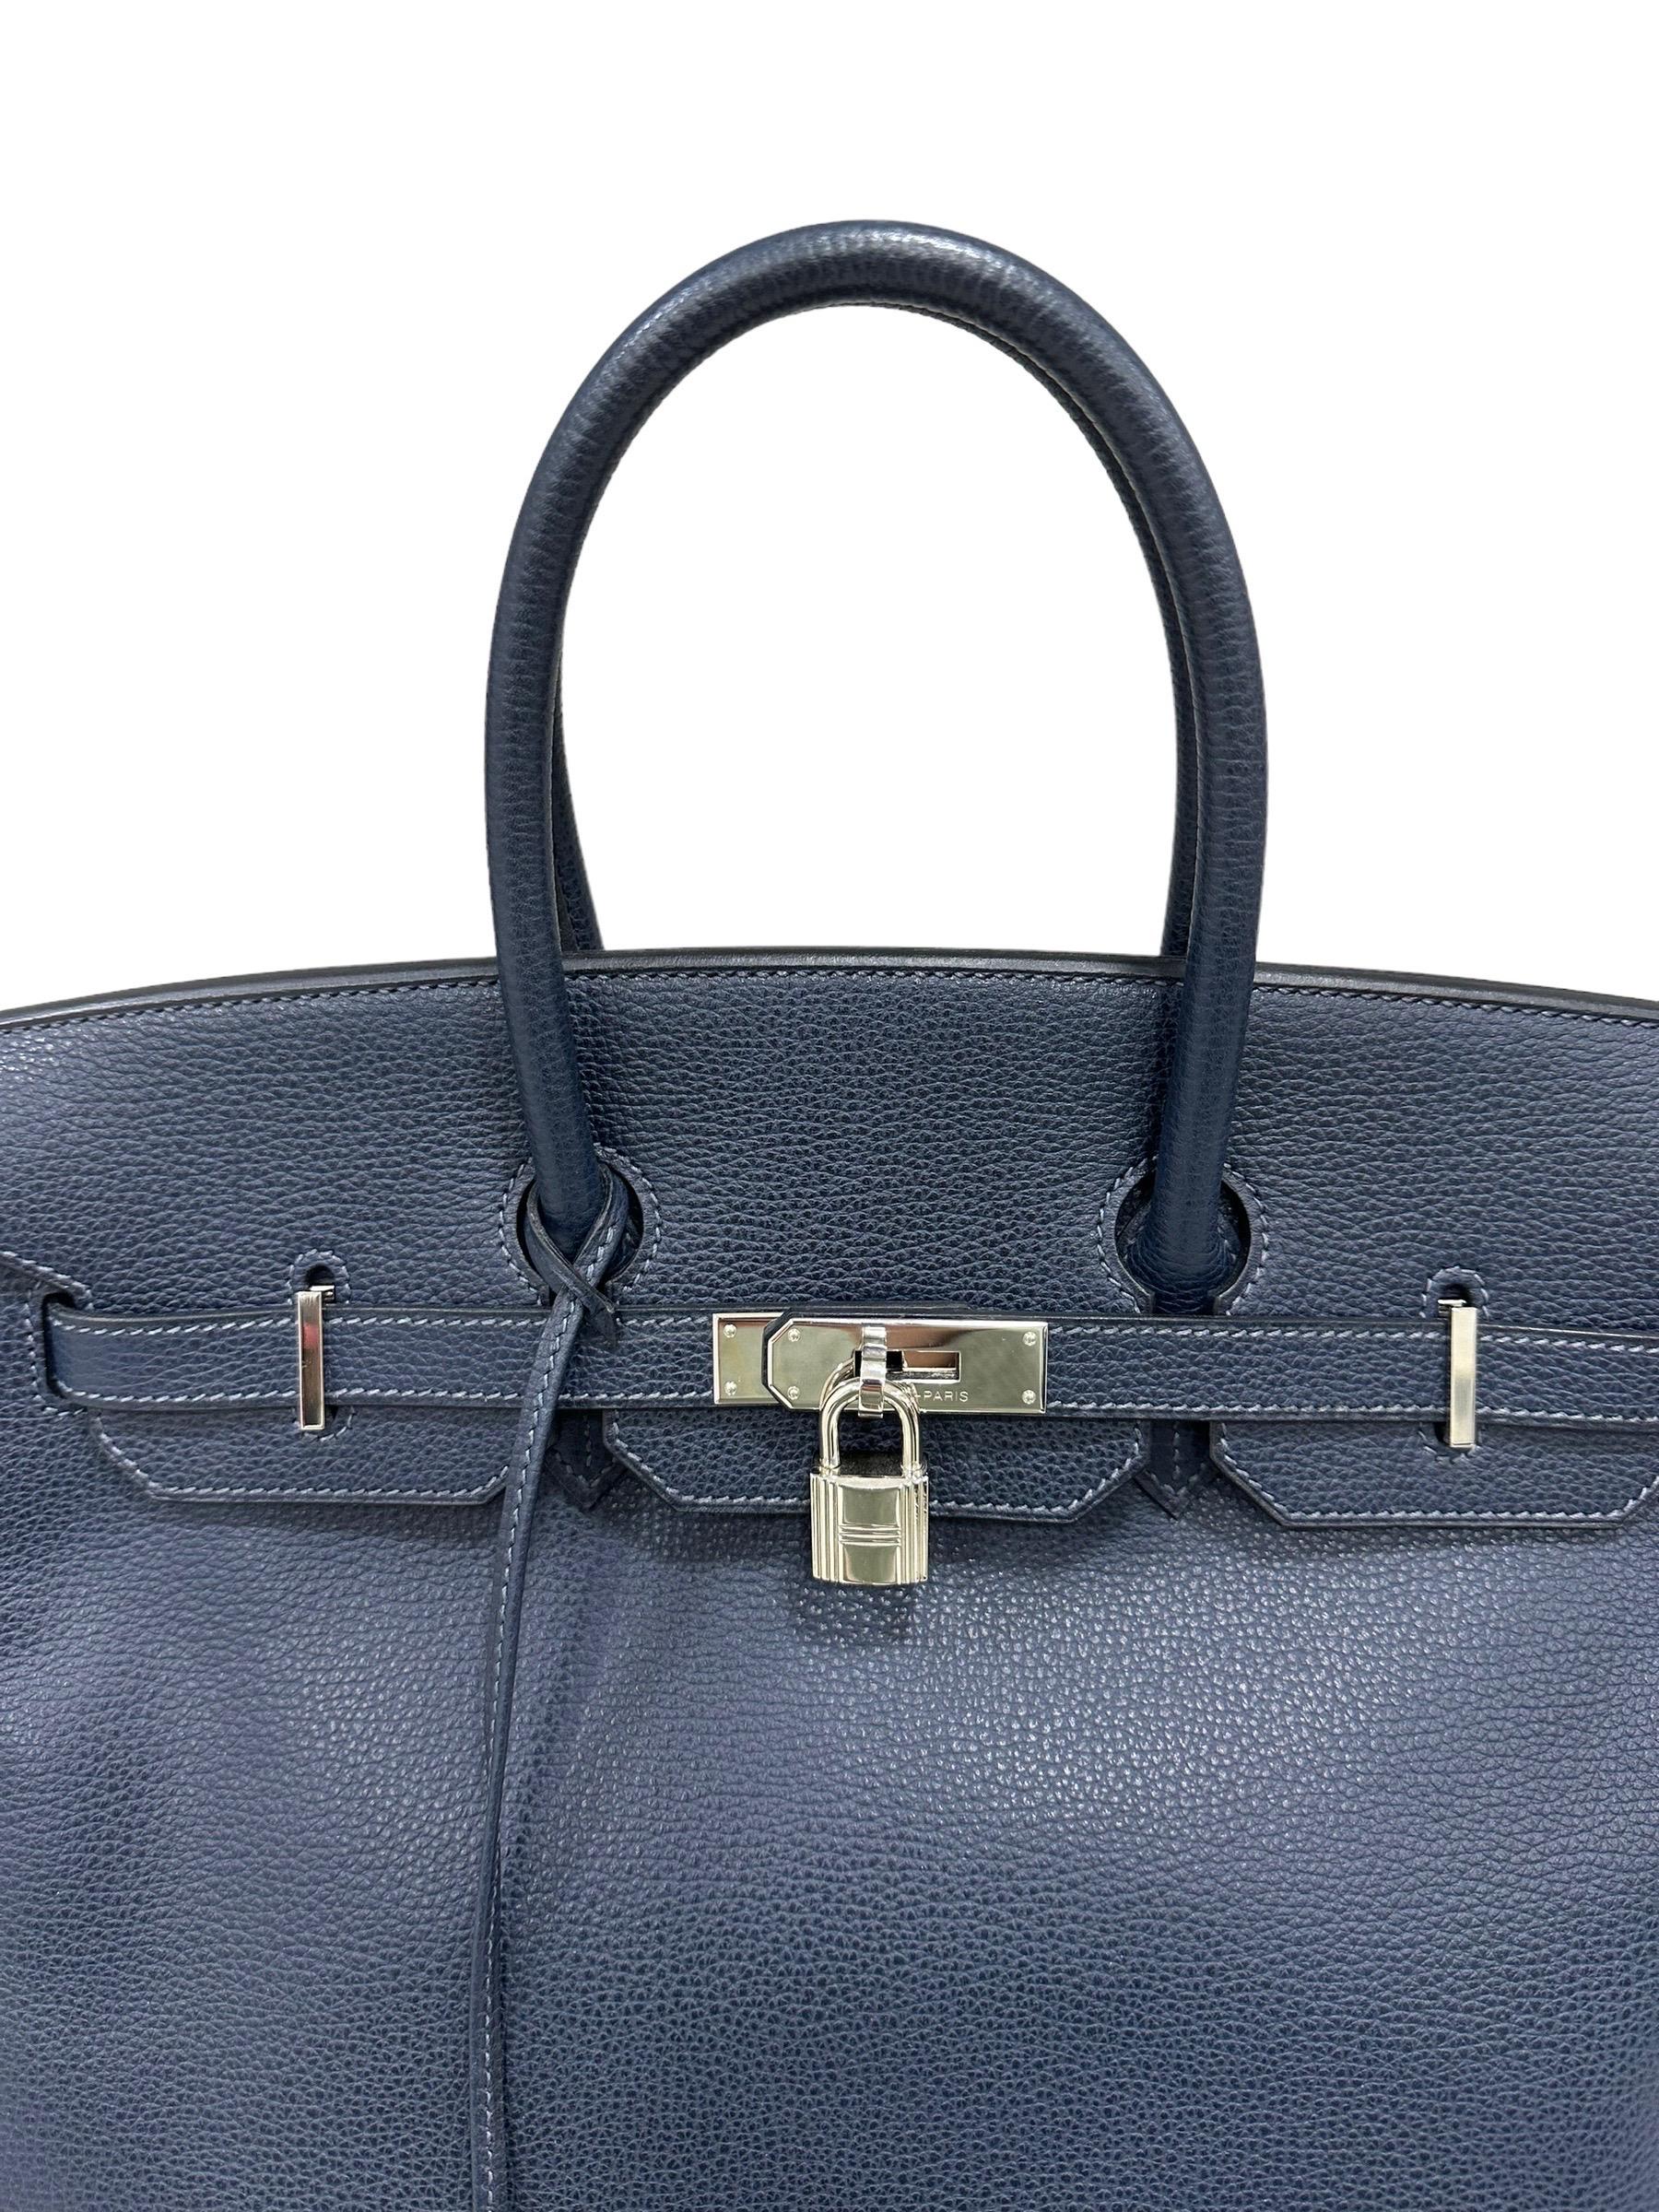 Sac à main Hermès, modèle Birkin, taille 35, réalisé en cuir Epsom de couleur Bleu Abysse avec des ferrures argentées. Équipé d'un rabat classique avec fermeture à emboîtement avec bande horizontale, cadenas et clés. Equipé d'une double poignée